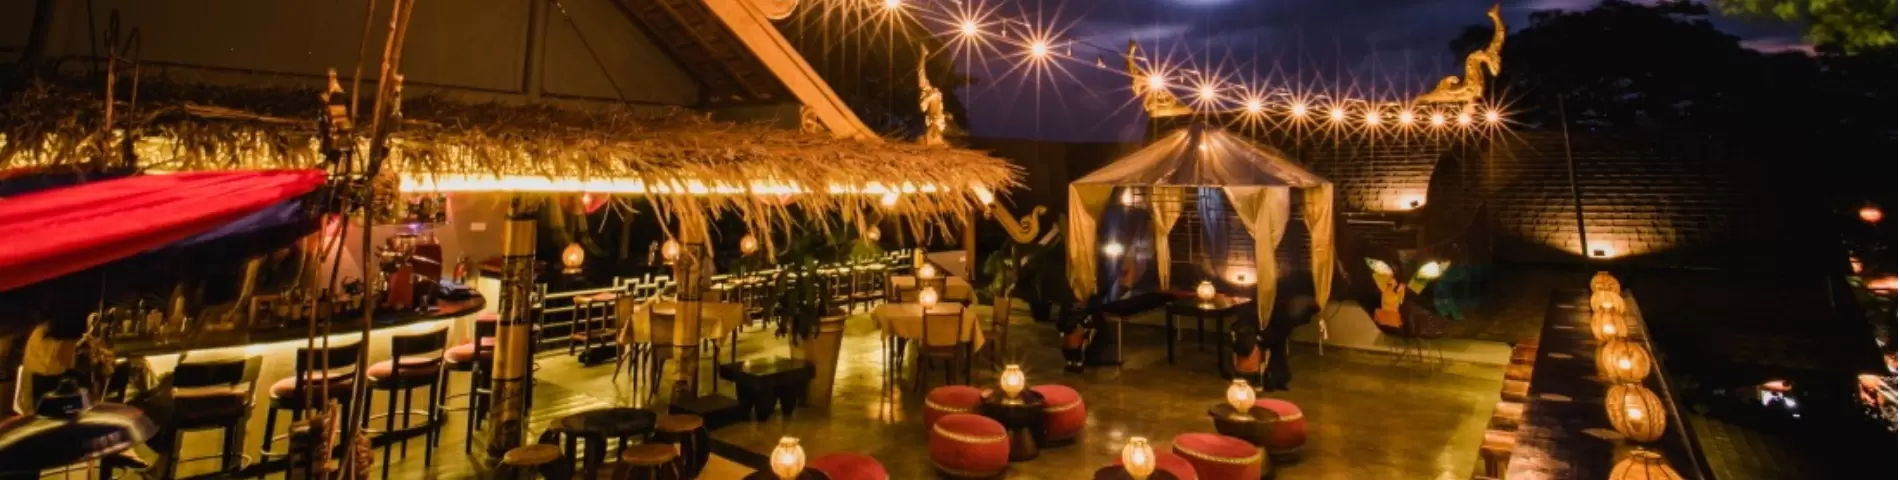 SaigonSan Restaurant & Rooftop Terrace